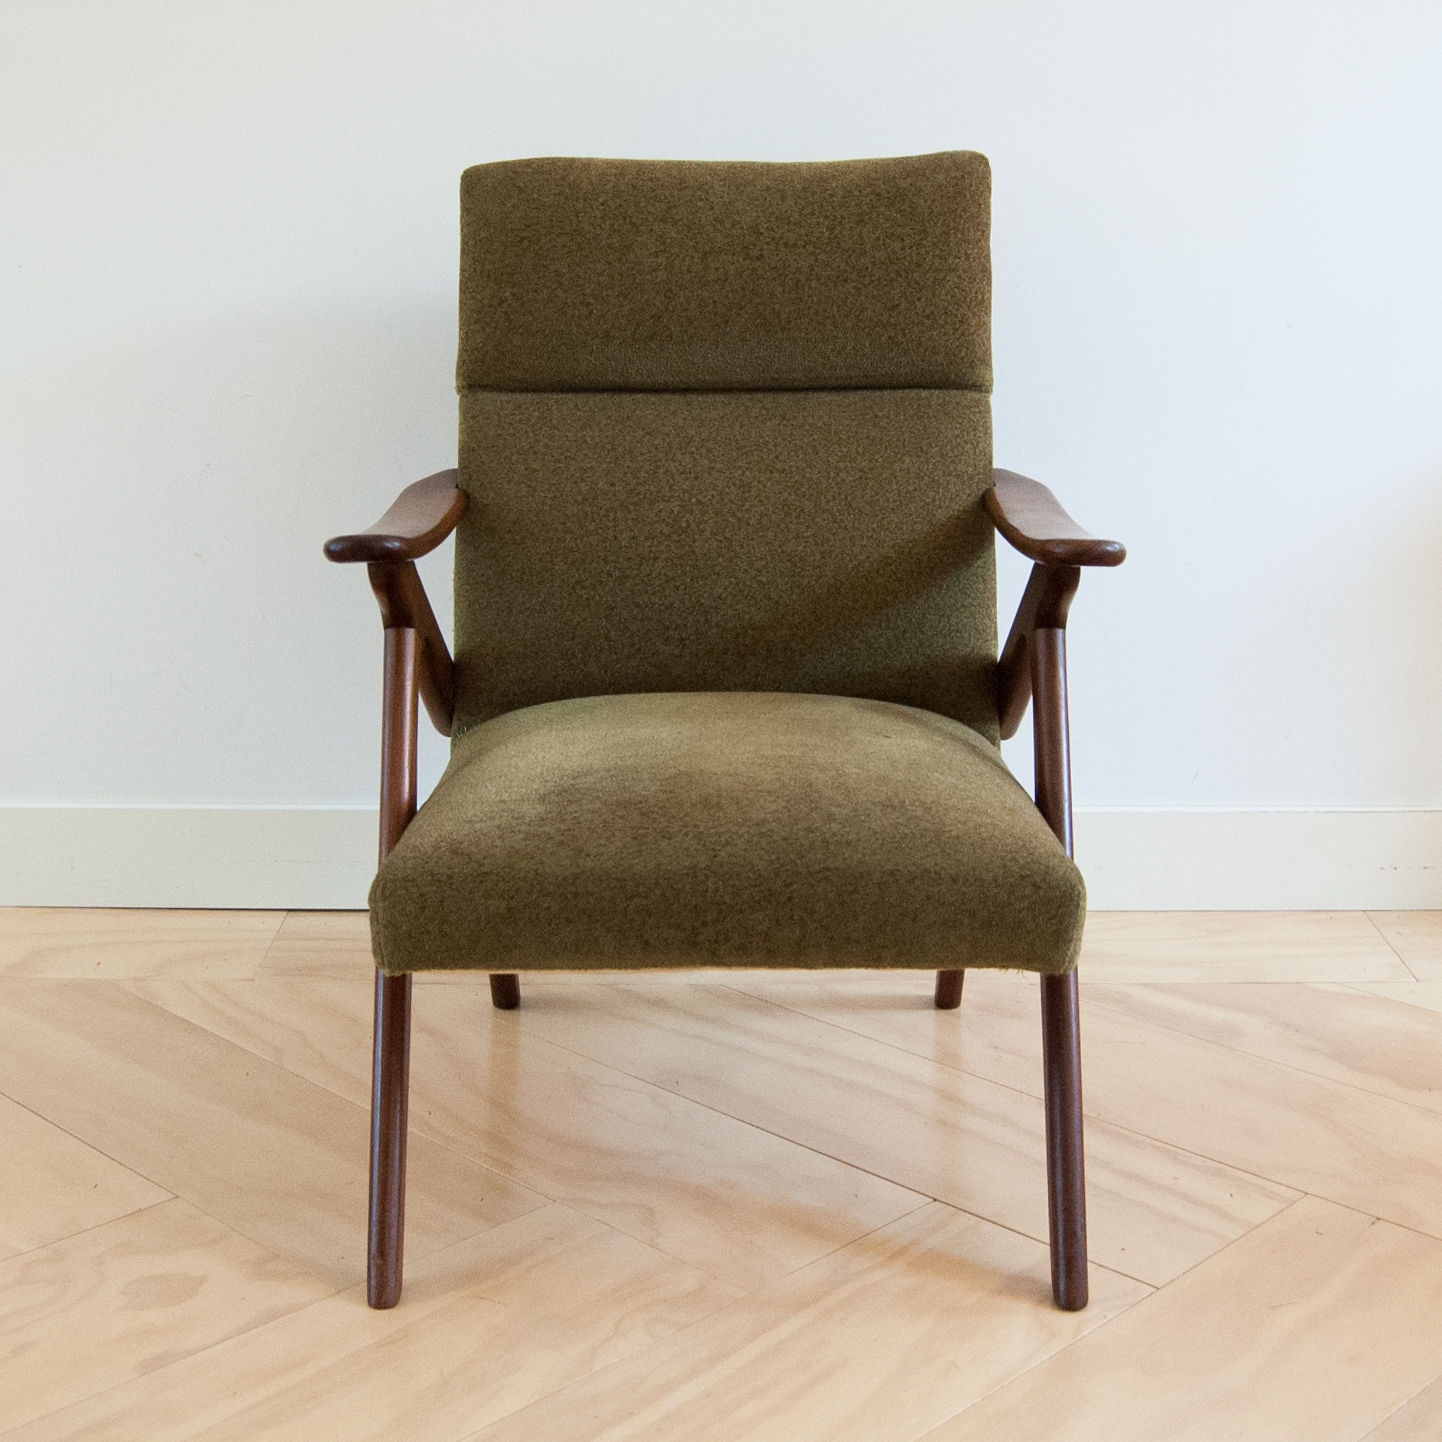 Vintage fauteuil met organische vormen